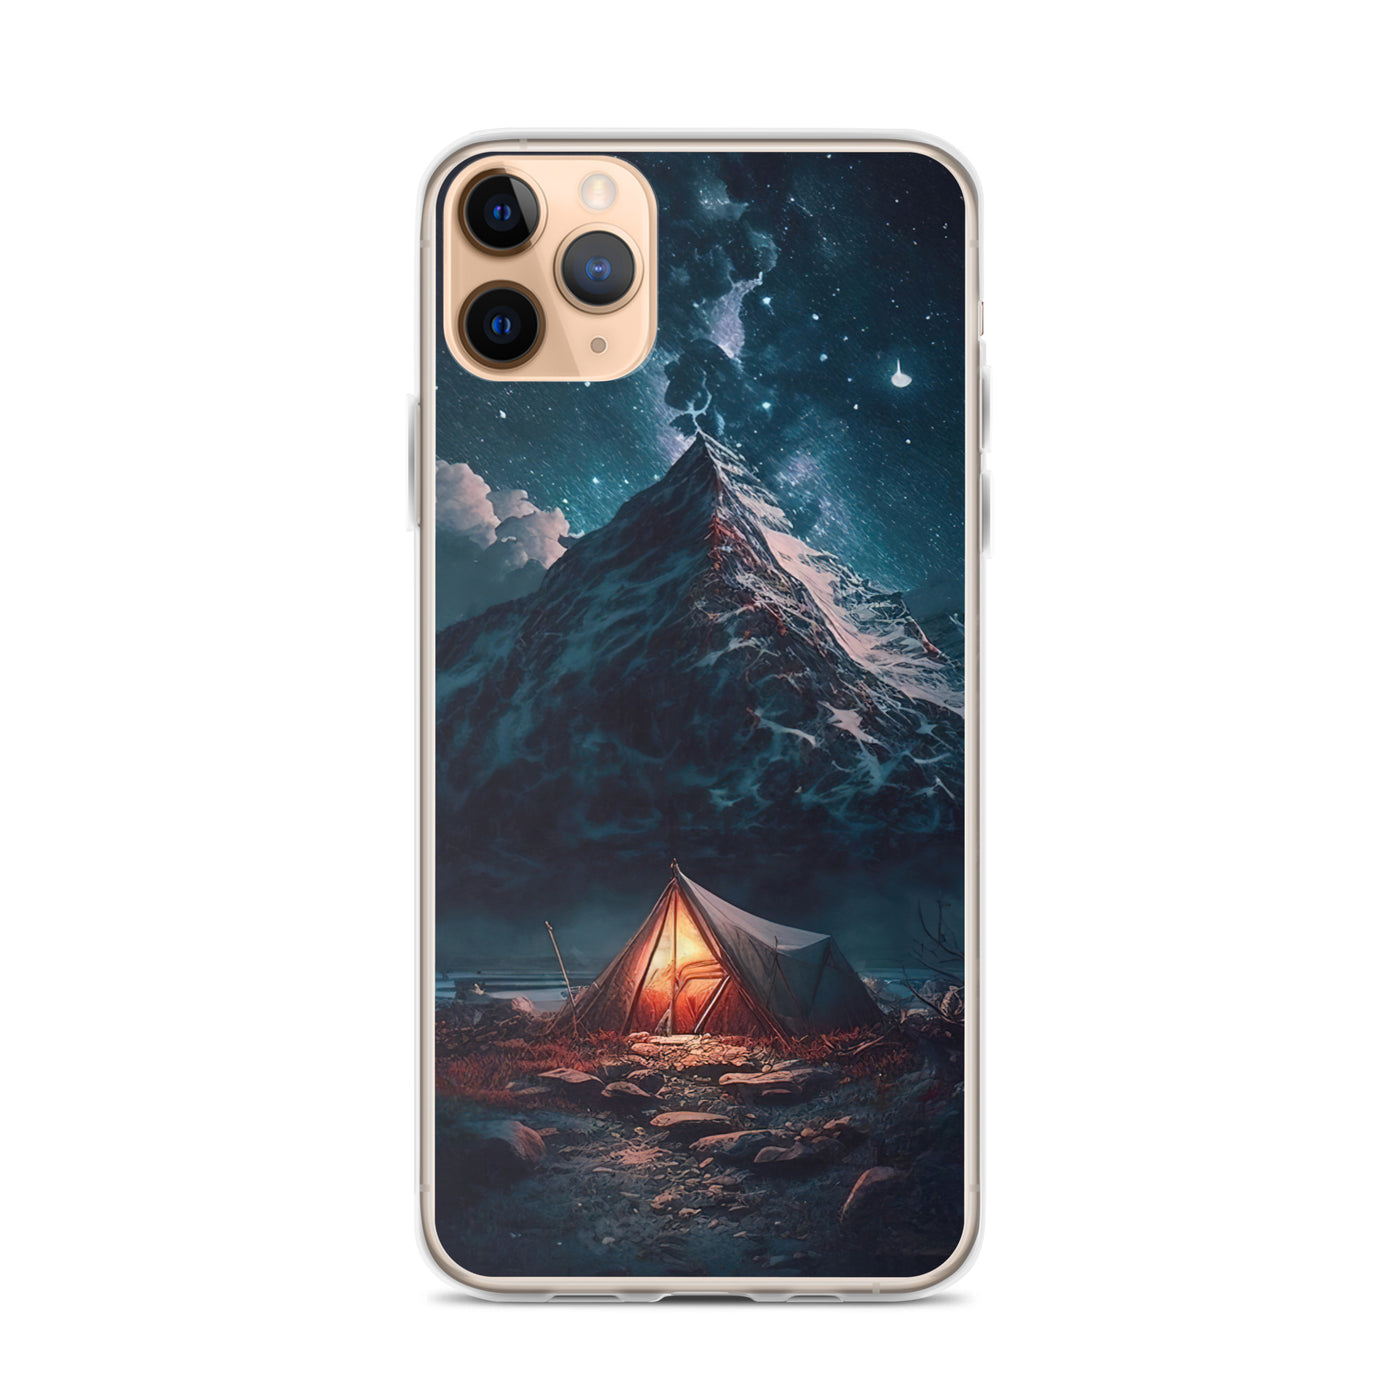 Zelt und Berg in der Nacht - Sterne am Himmel - Landschaftsmalerei - iPhone Schutzhülle (durchsichtig) camping xxx iPhone 11 Pro Max